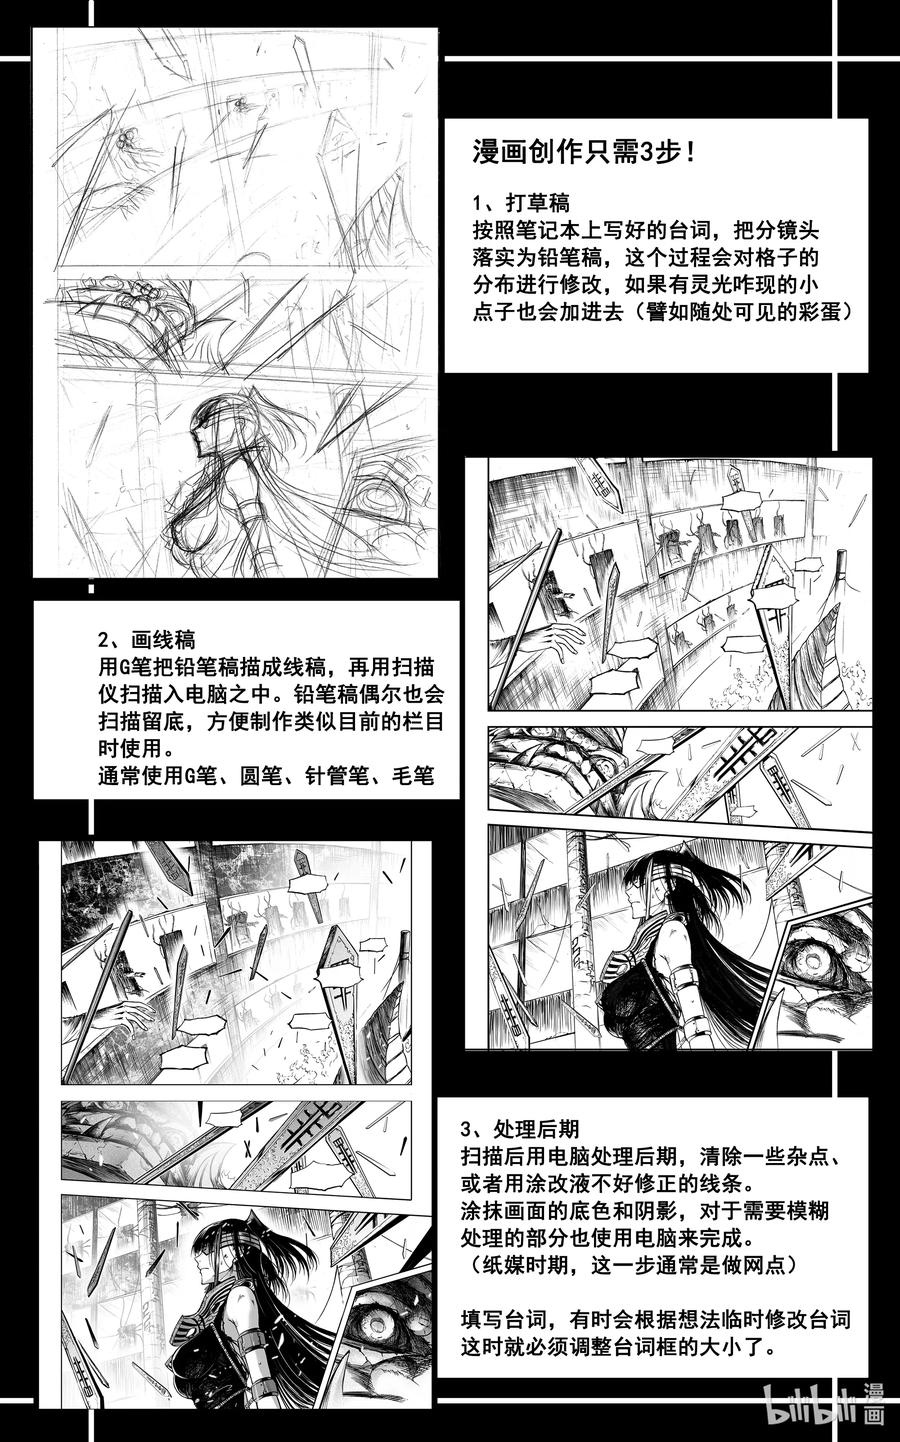 BLISS-極樂幻奇譚 - 漫畫設定 初始設定大公開 - 3